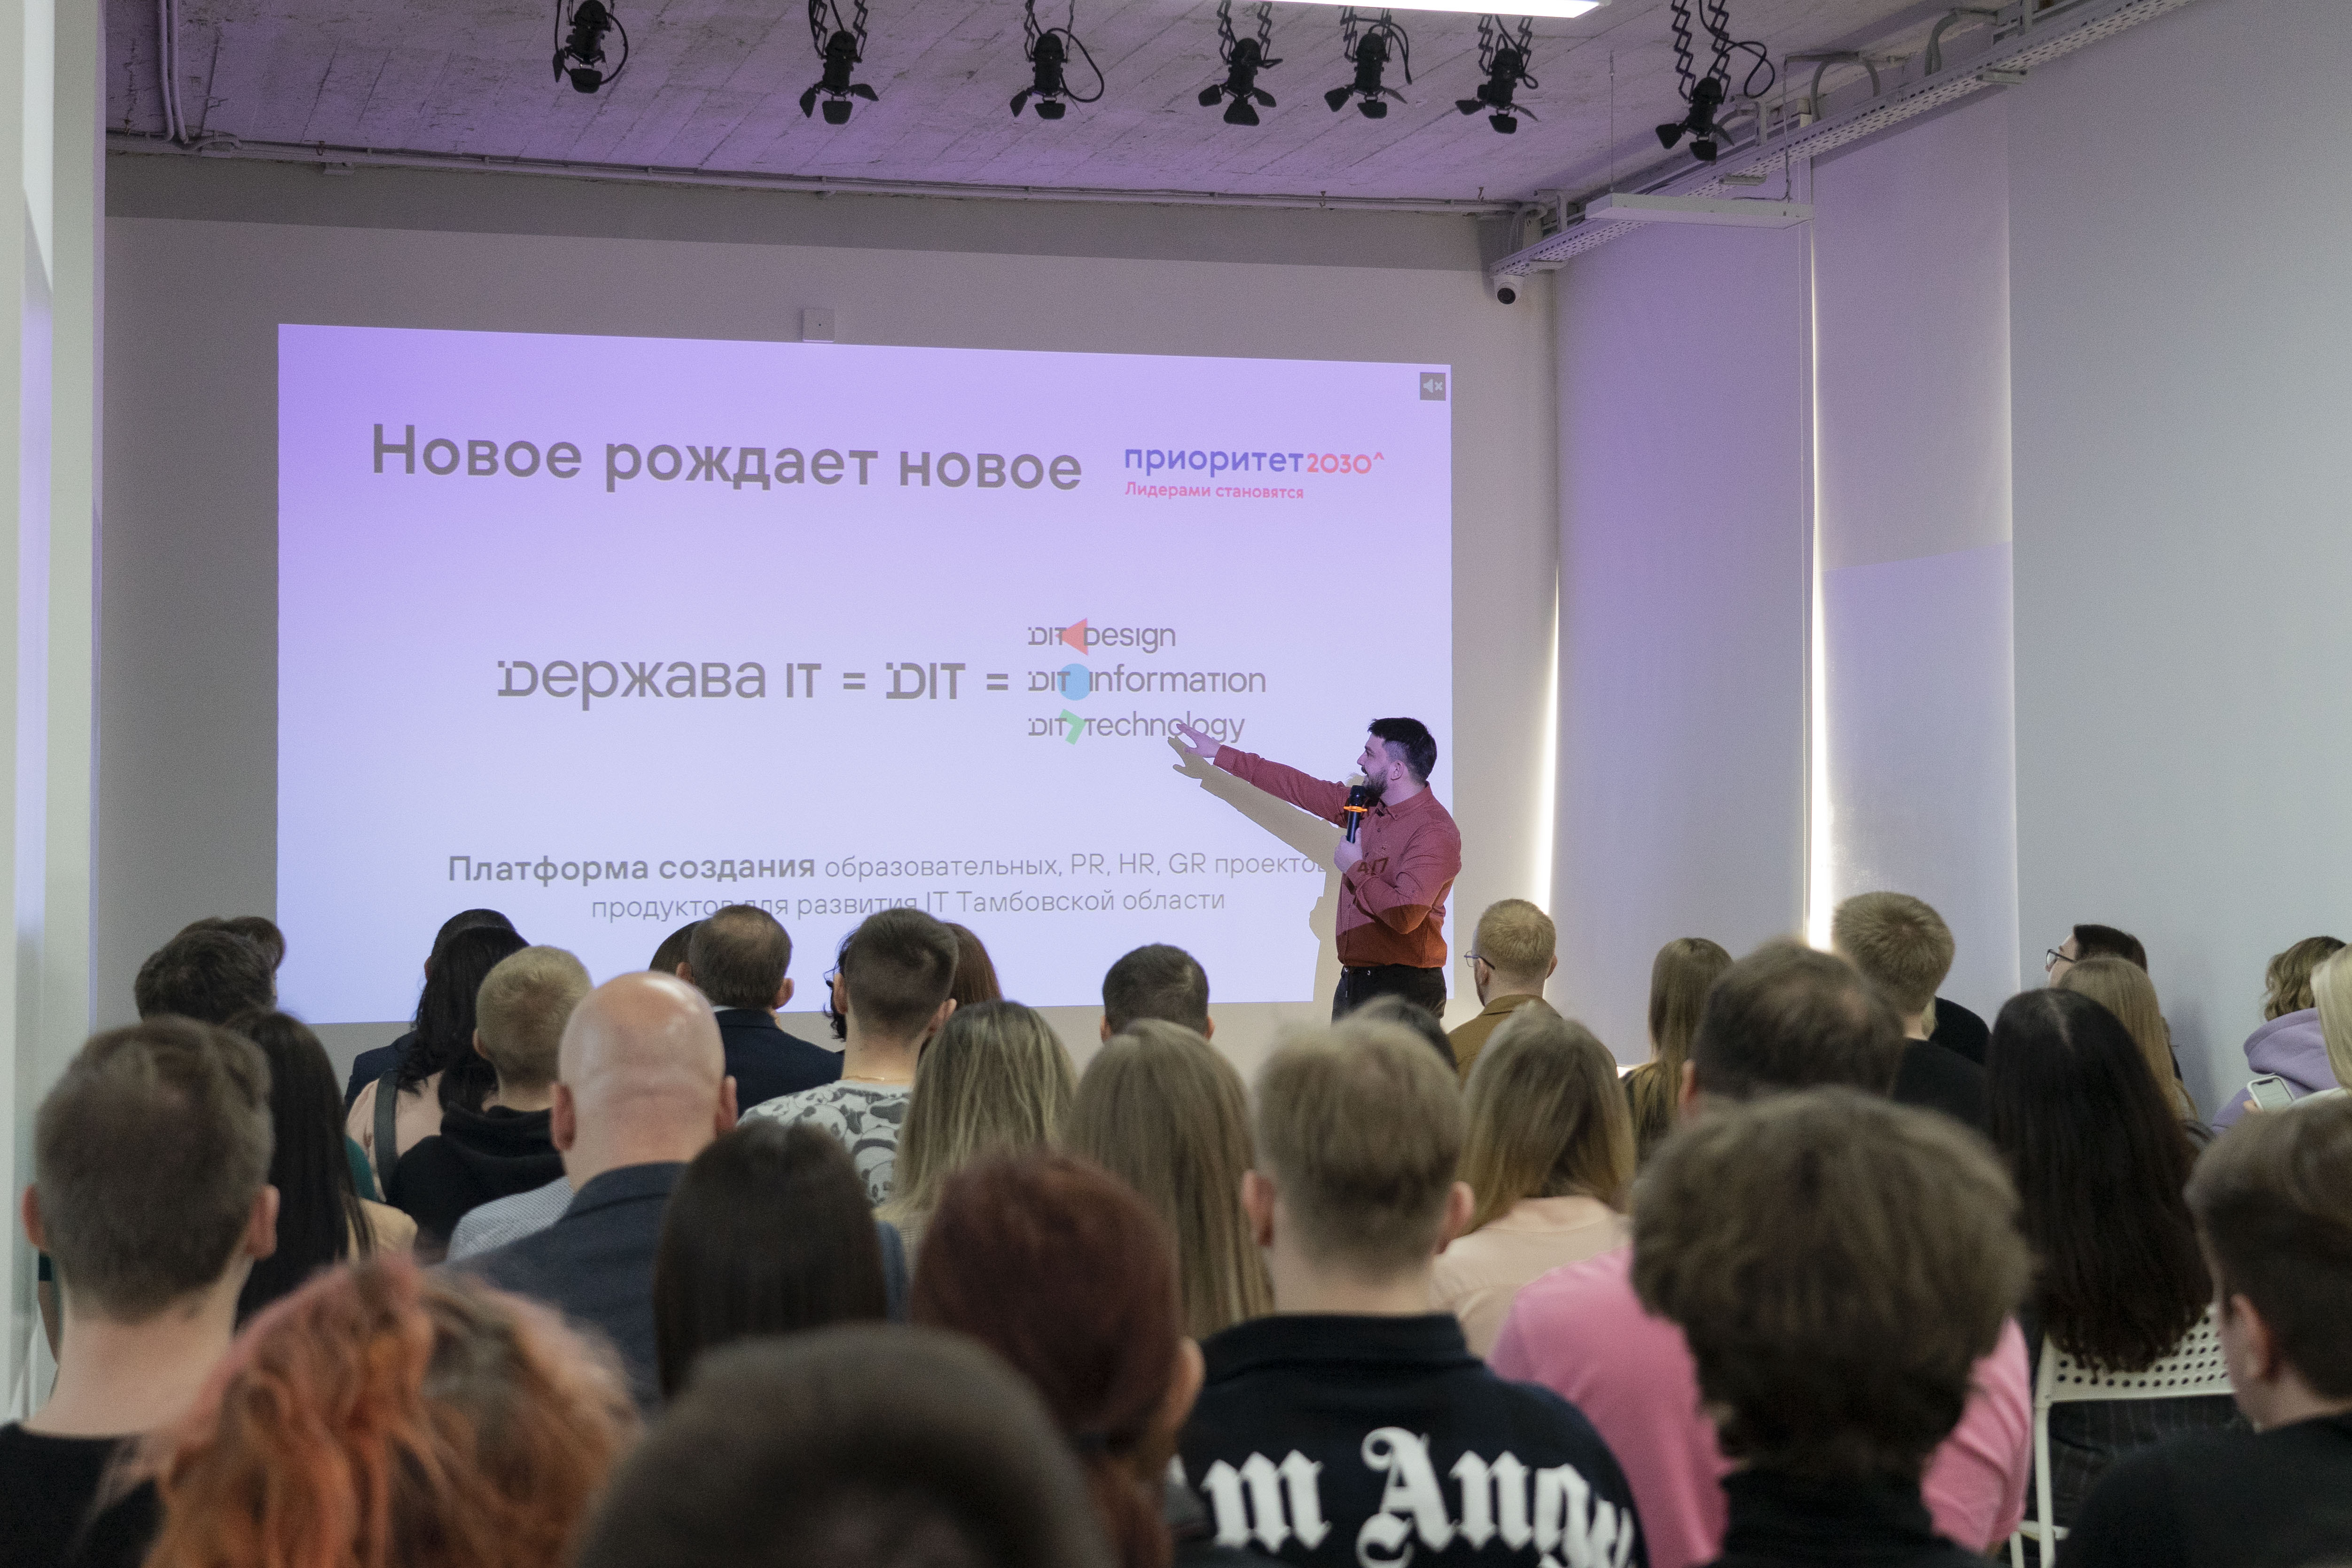 Державинский открыл проектно-образовательное пространство для подготовки IT-кадров в регионе фото анонса